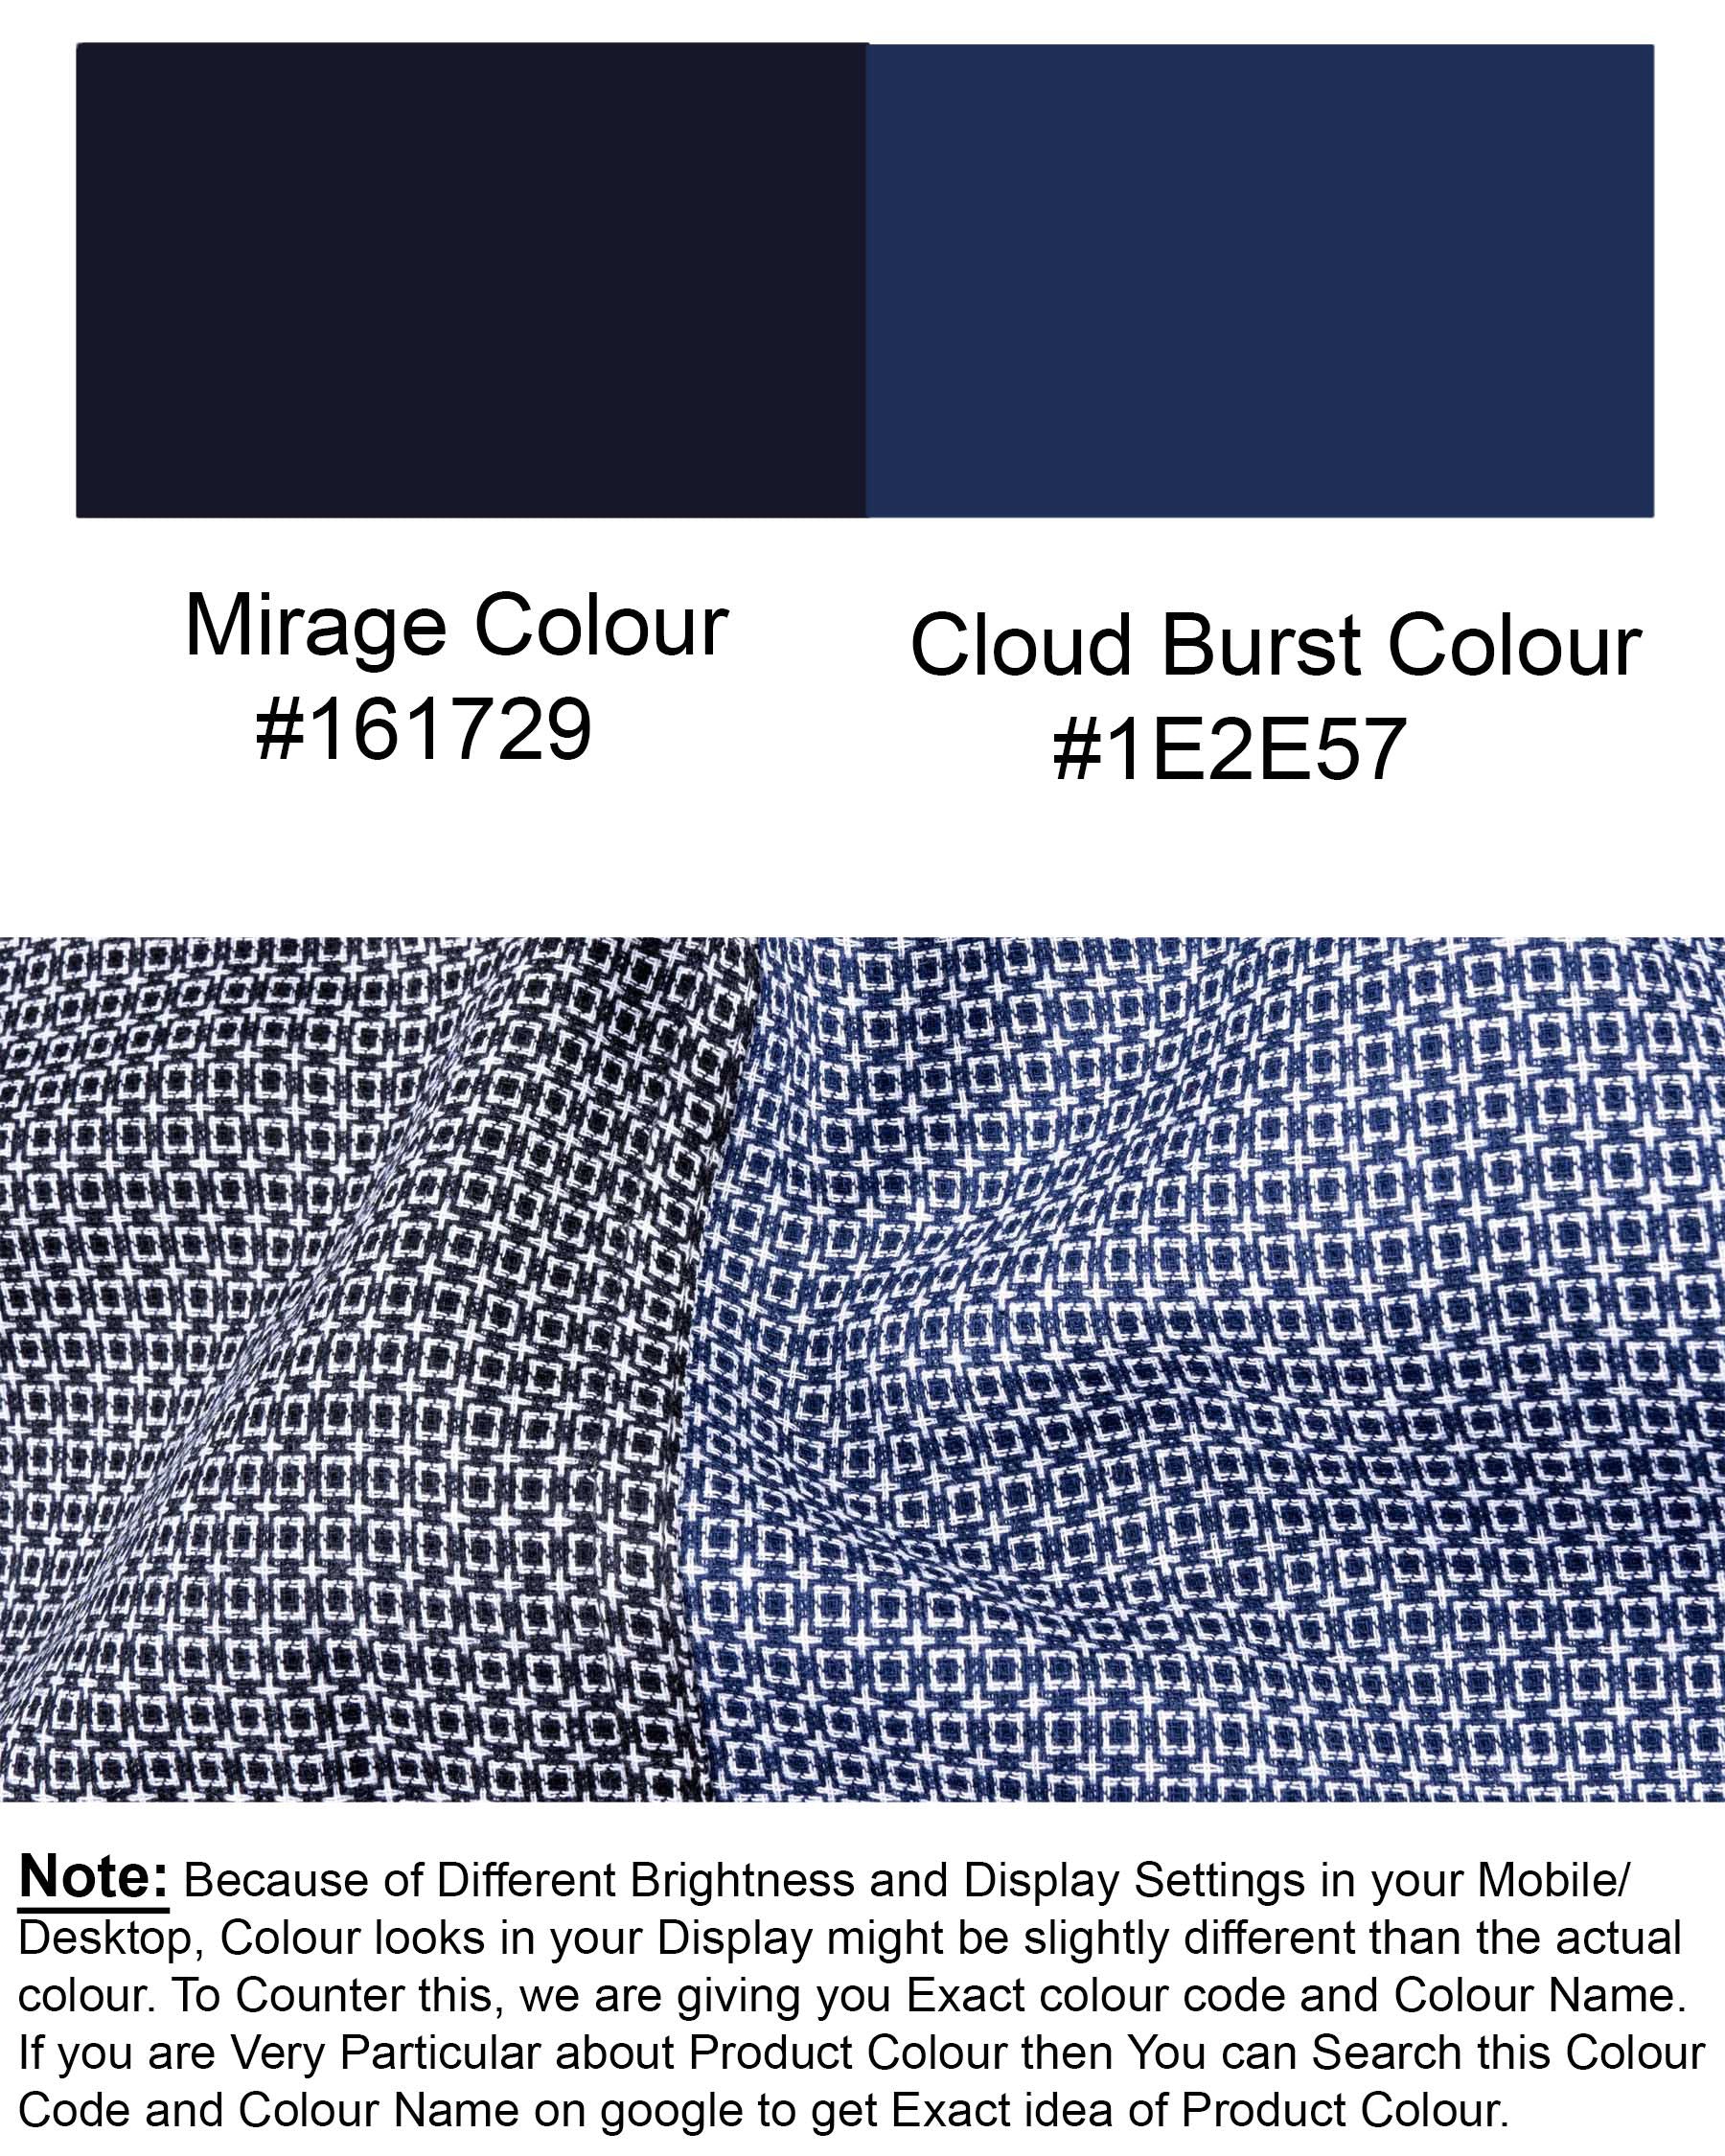 Half Mirage Half Cloud Burst Blue Dobby Textured Premium Giza Cotton Shirt 6742-D9-38,6742-D9-38,6742-D9-39,6742-D9-39,6742-D9-40,6742-D9-40,6742-D9-42,6742-D9-42,6742-D9-44,6742-D9-44,6742-D9-46,6742-D9-46,6742-D9-48,6742-D9-48,6742-D9-50,6742-D9-50,6742-D9-52,6742-D9-52